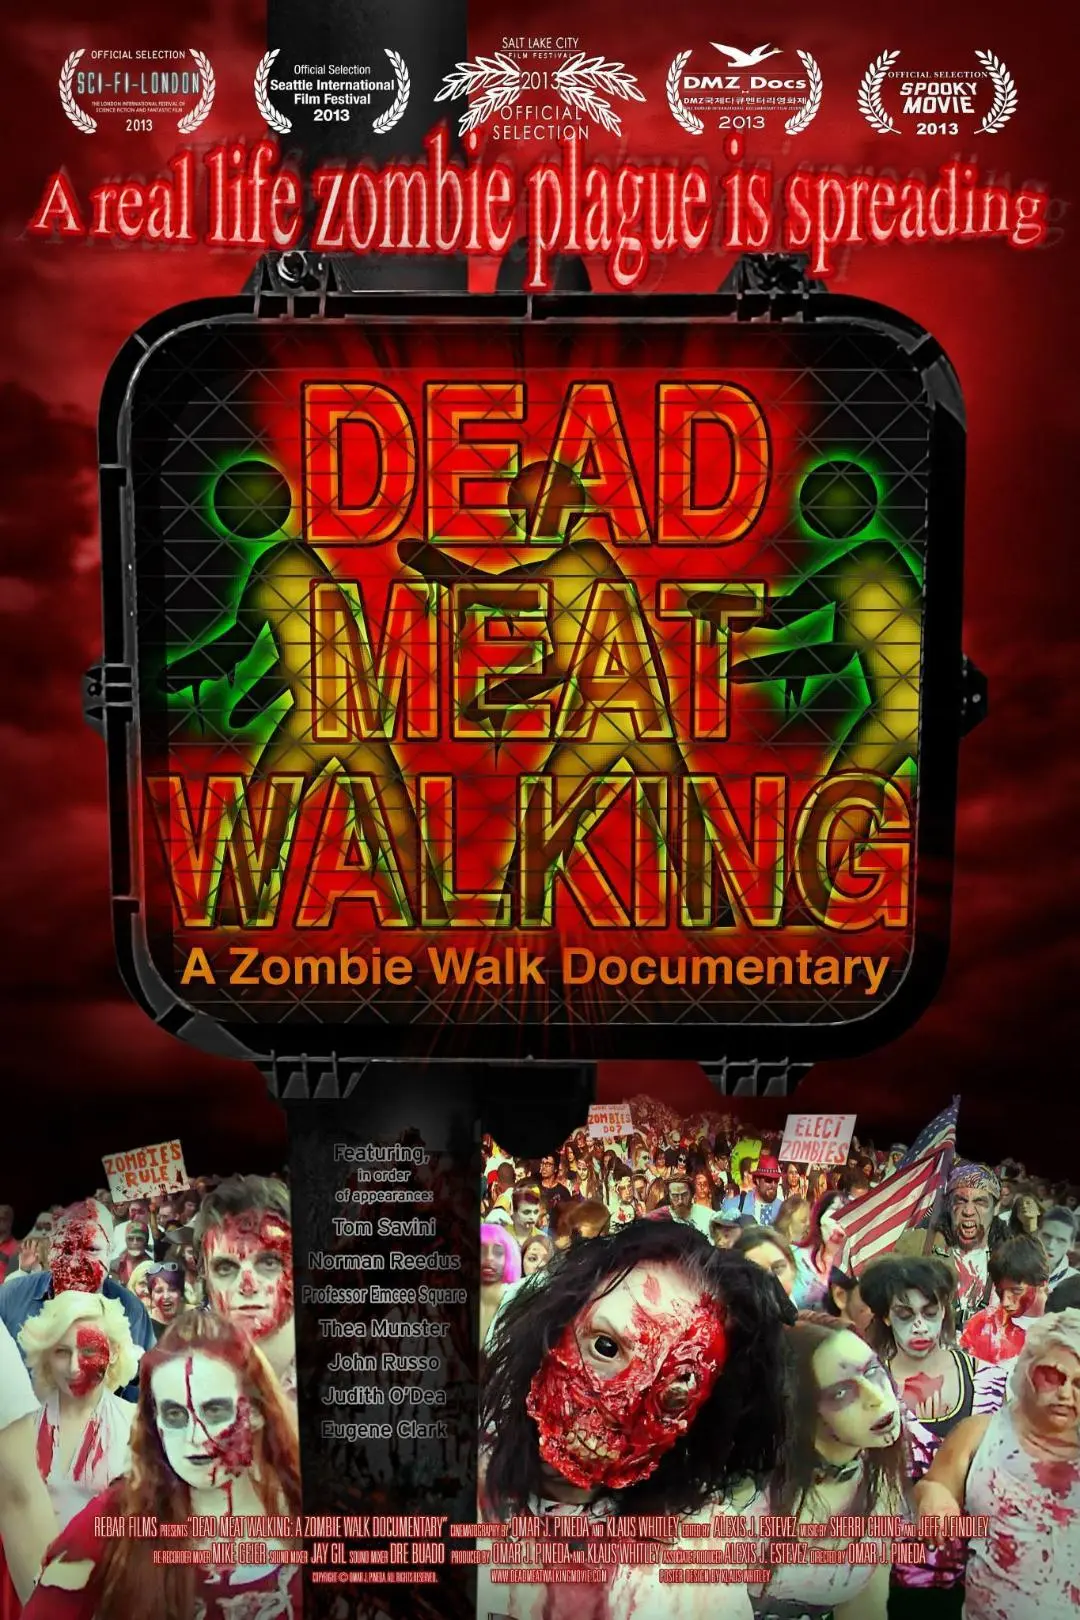 Dead Meat Walking: A Zombie Walk Documentary_peliplat